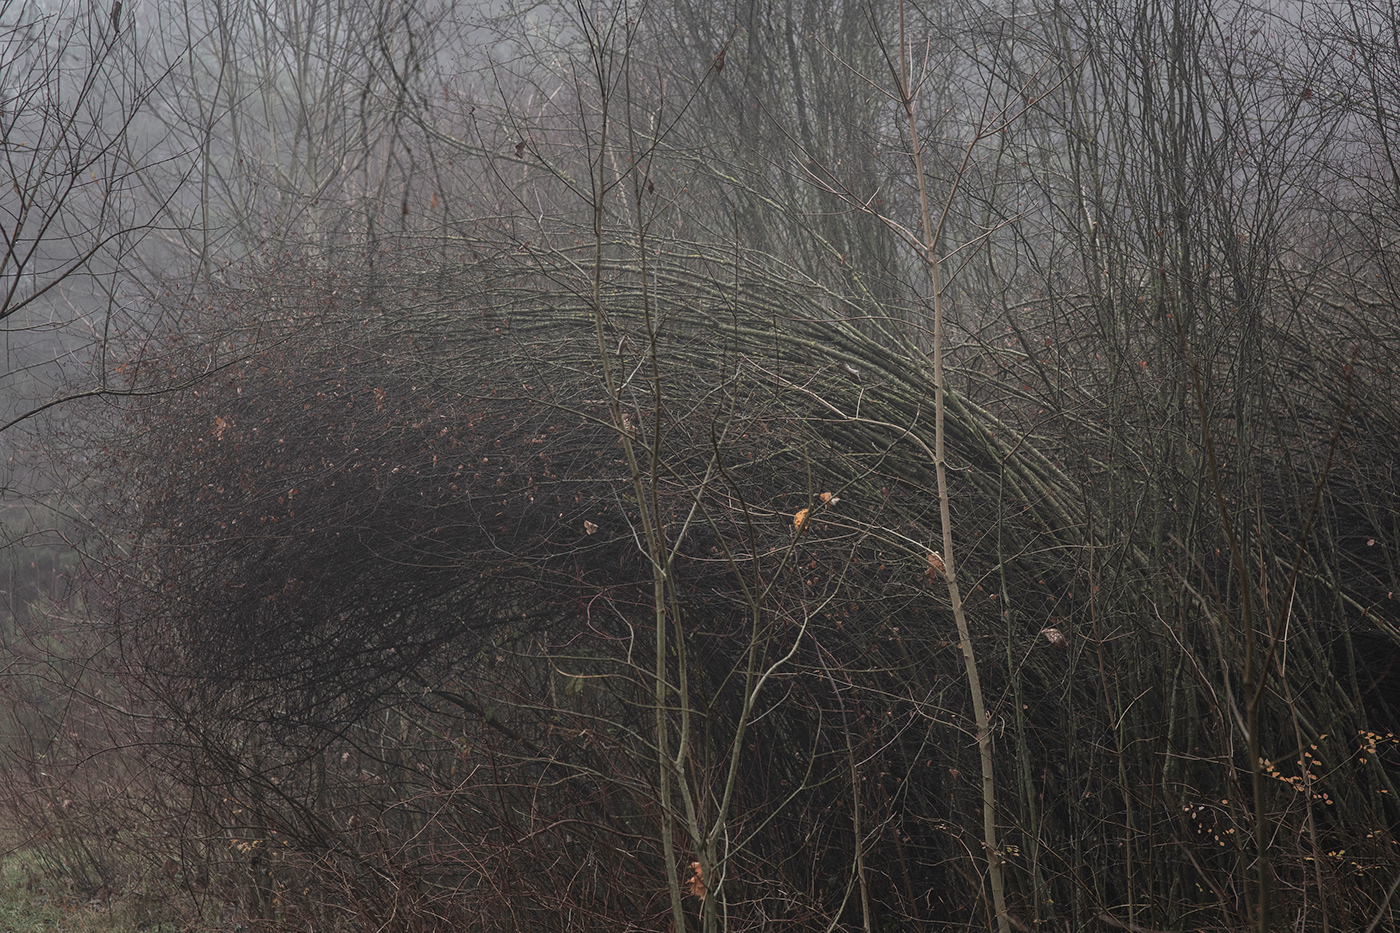 lietuva lithuania Landscape mist trees autumn Mindaugas Buivydas Fog landscape tree art fog